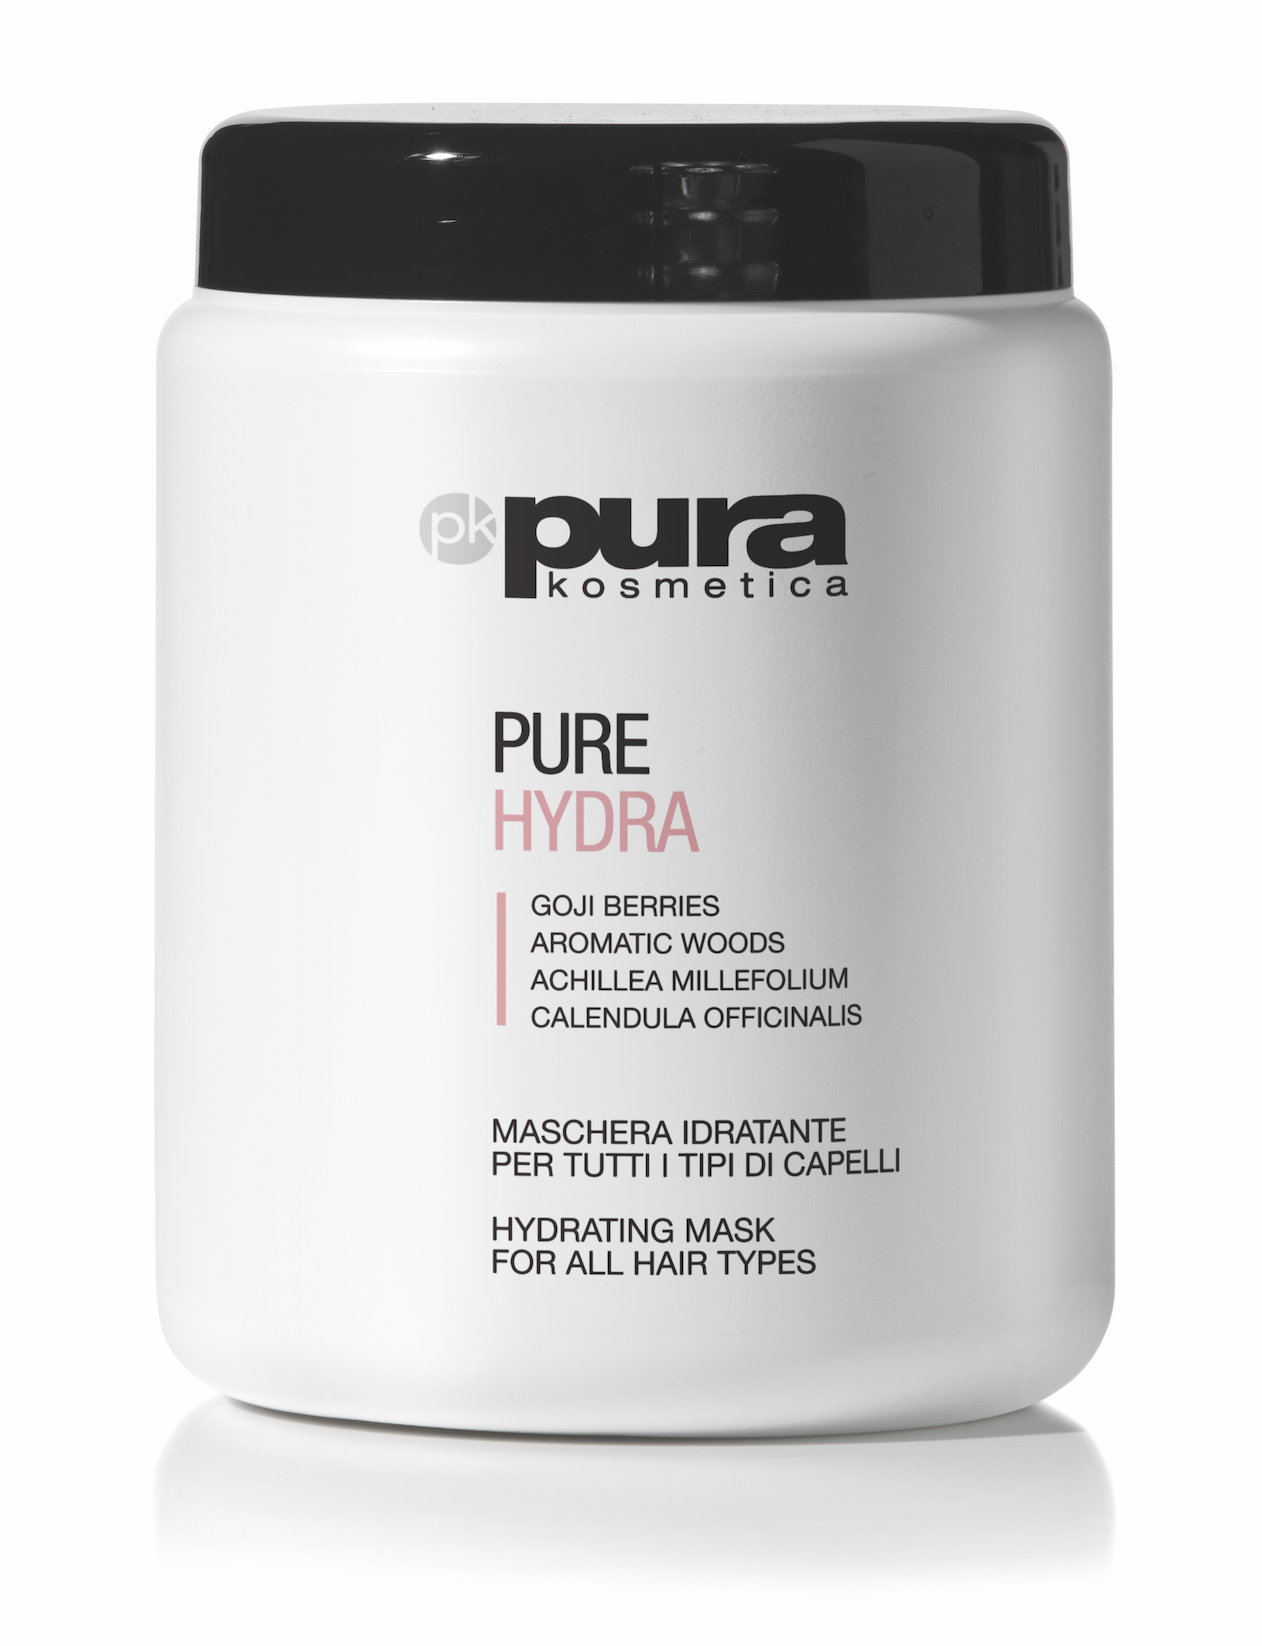 Pura Kosmetica Pure Hydra Hydrating Mask, 1000ml